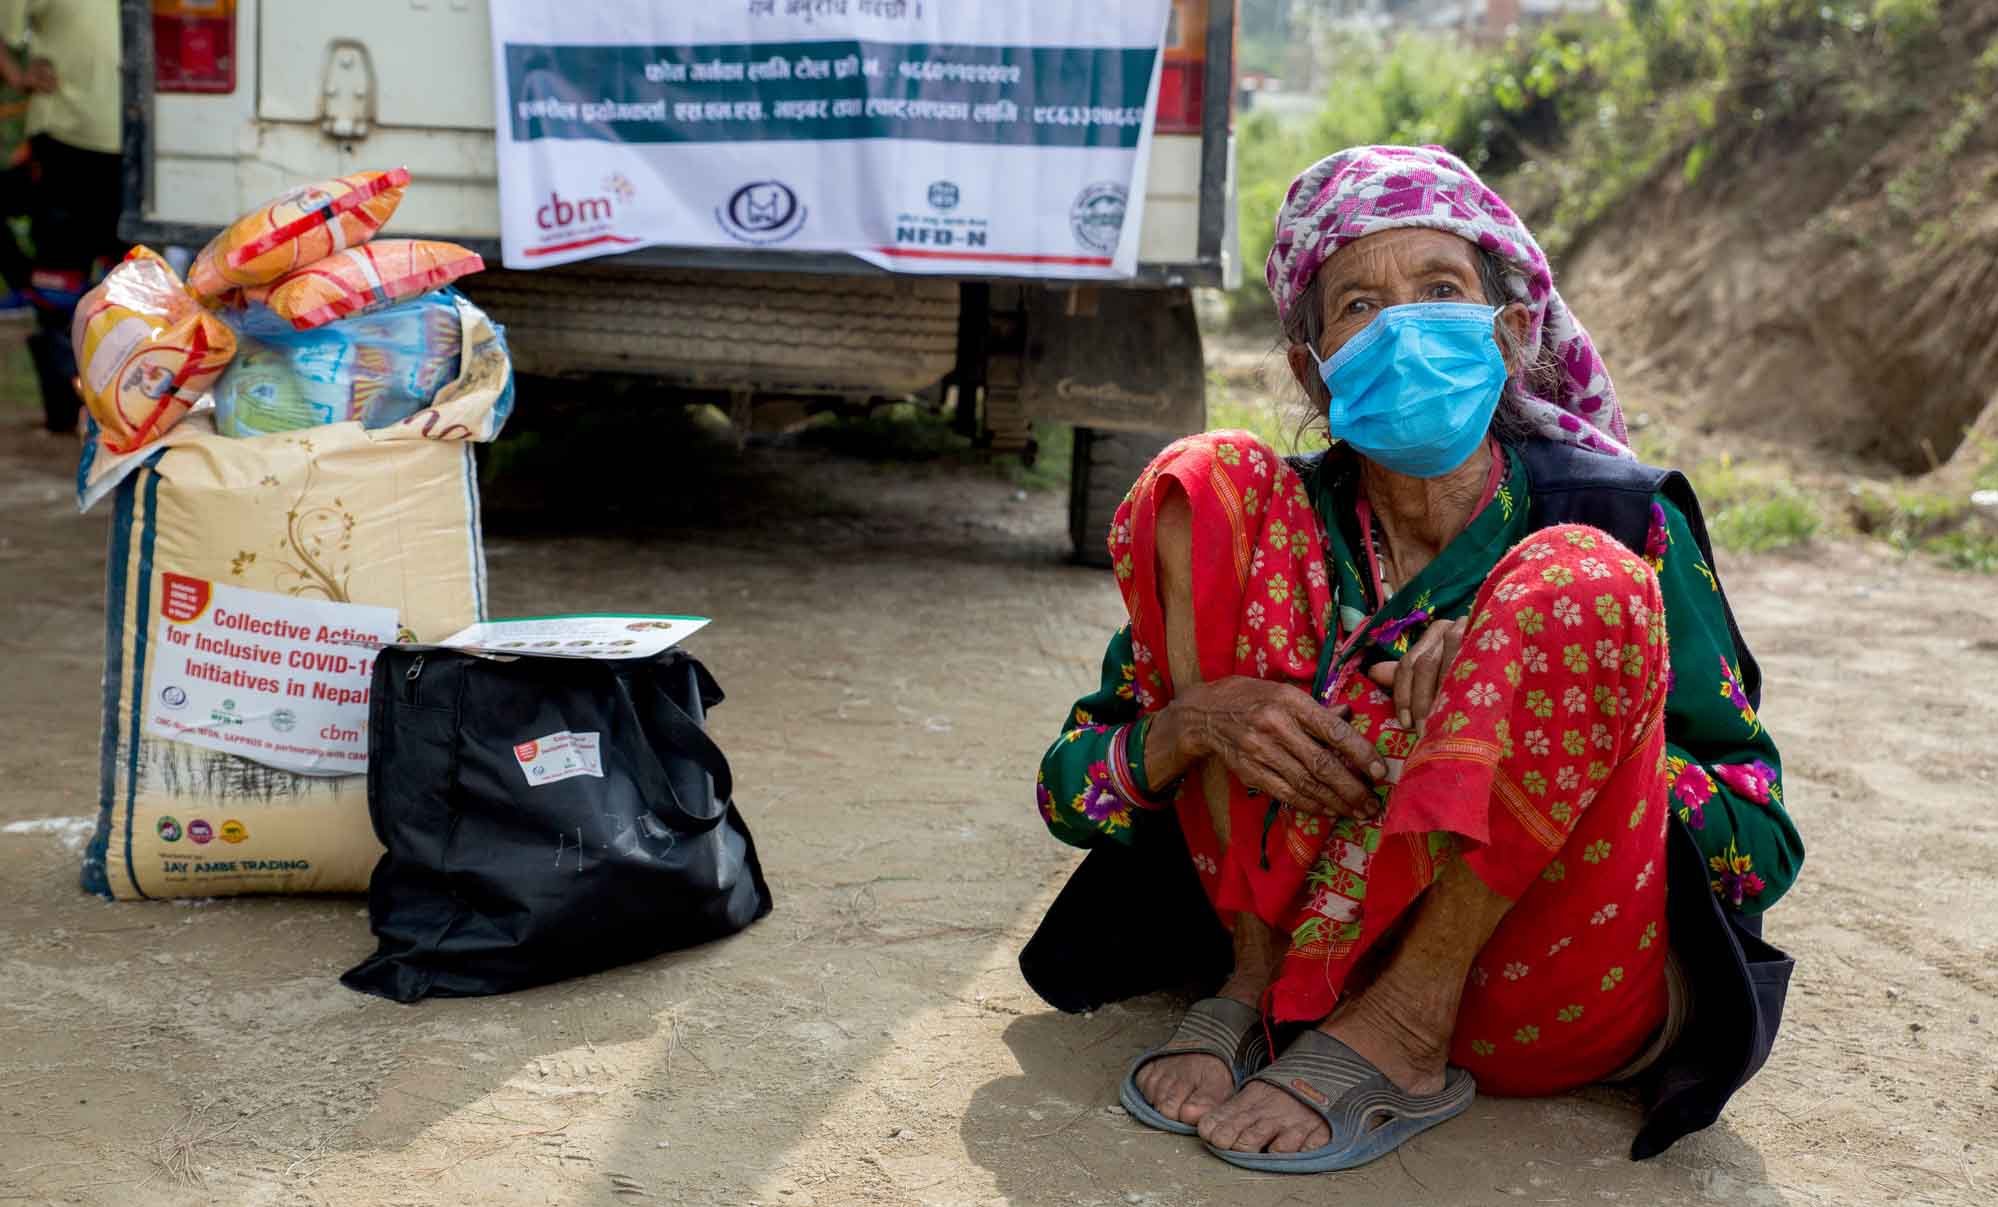 Eine alte Frau aus Nepal mit Maske sitzt in der Hocke. Neben ihr ein Sack Reis oder Mehl sowie weitere Nahrungsmittel.